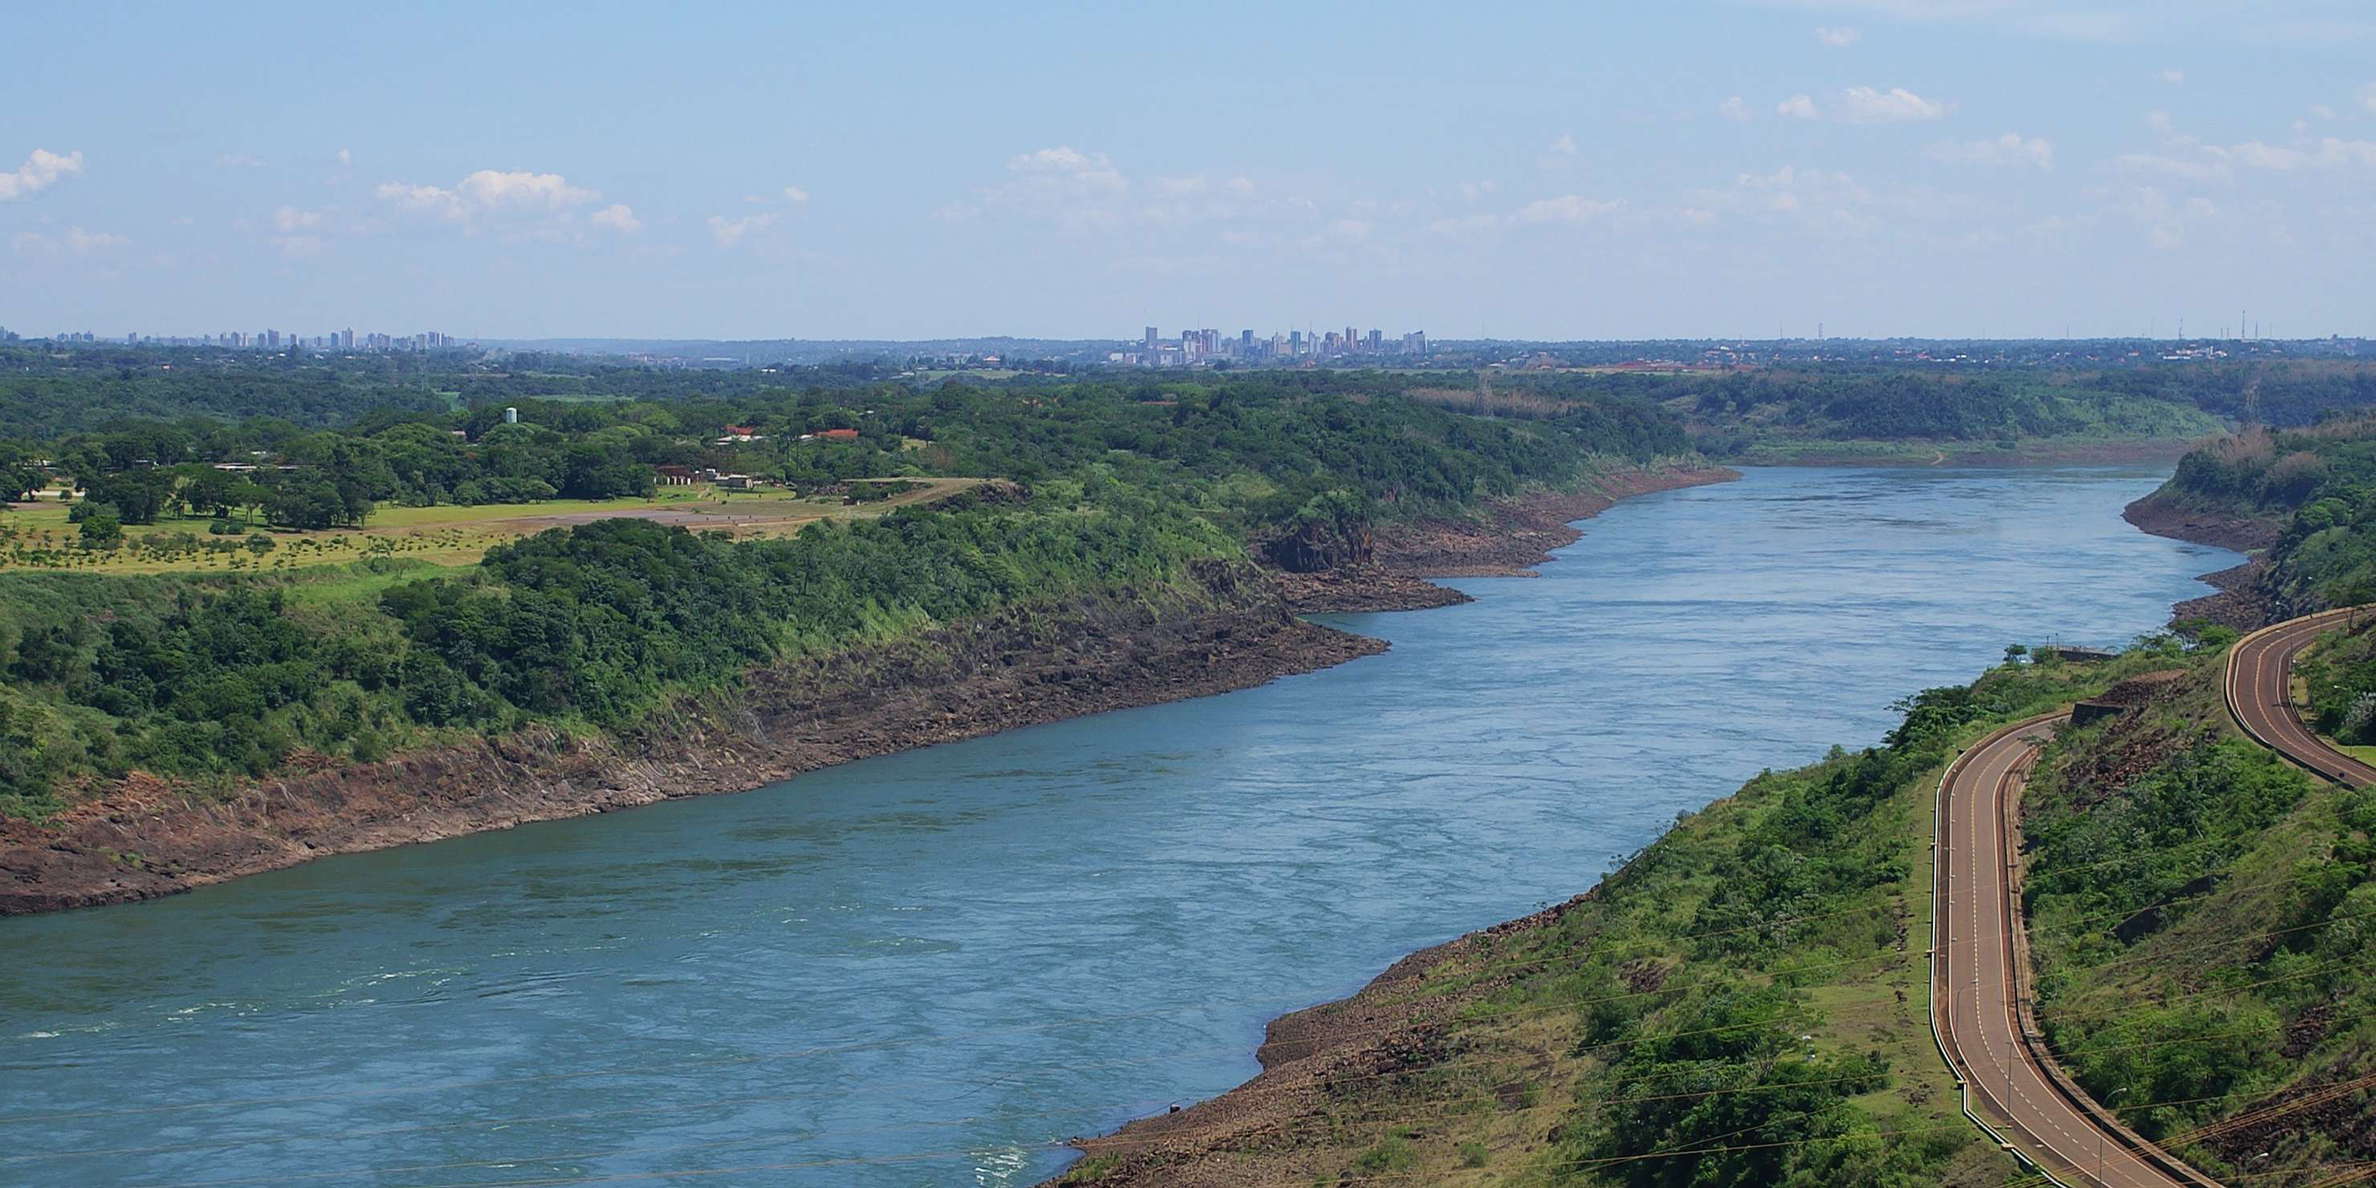 Río Paraná (Paraguay | Brazil)